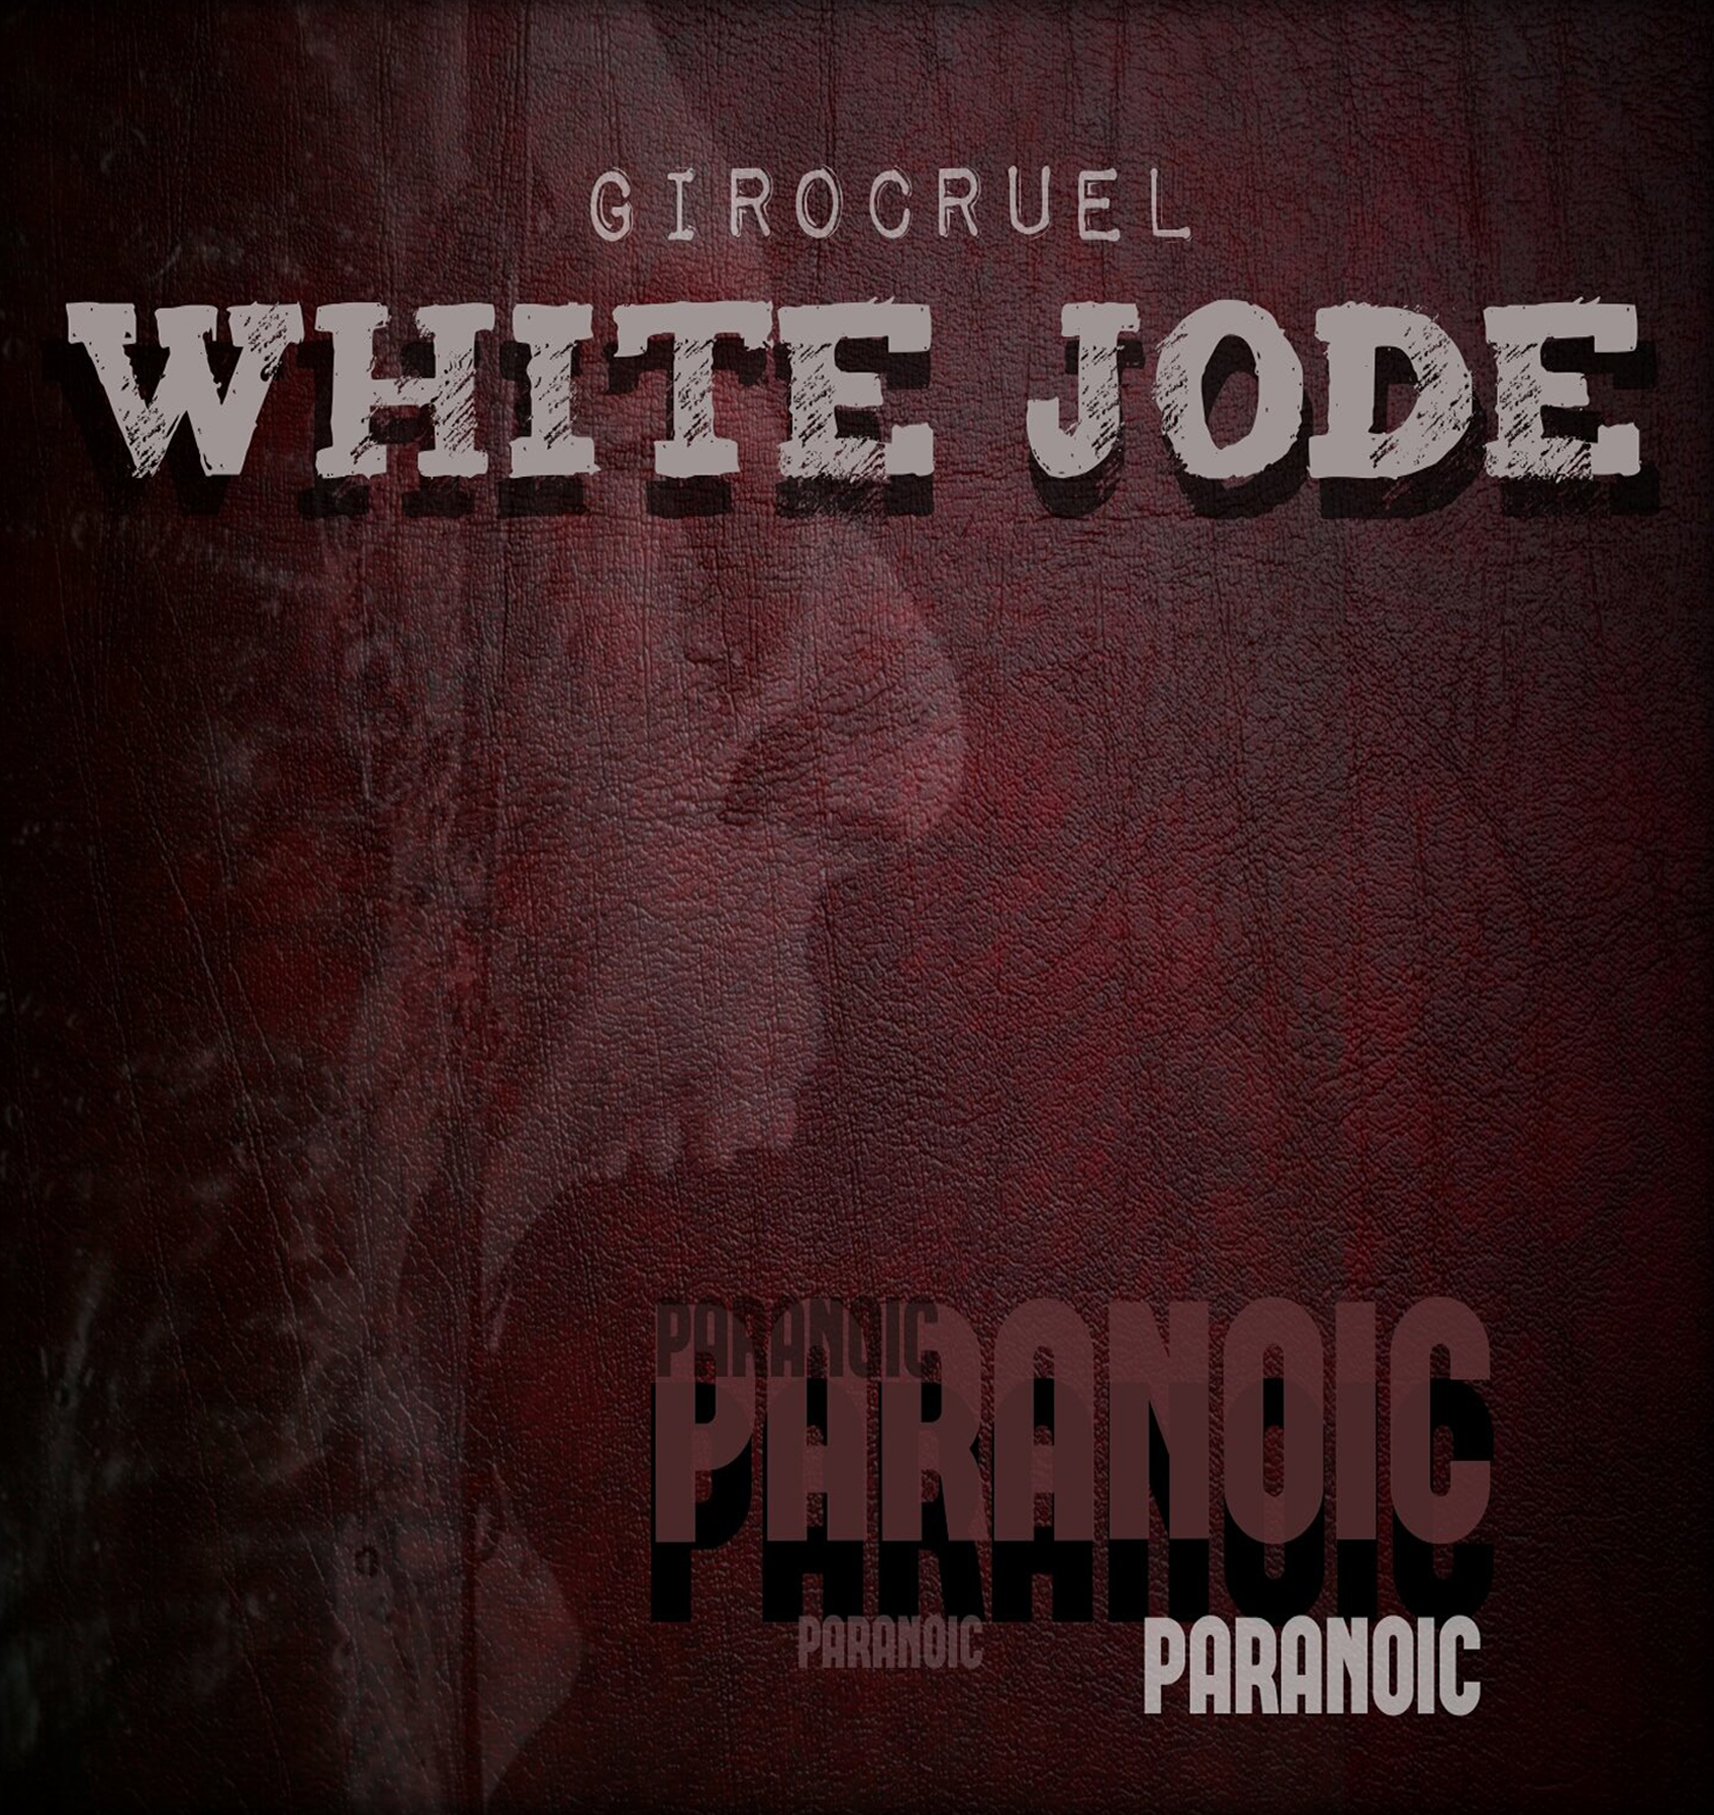 White_jode___giro_cruel_-_paranoic